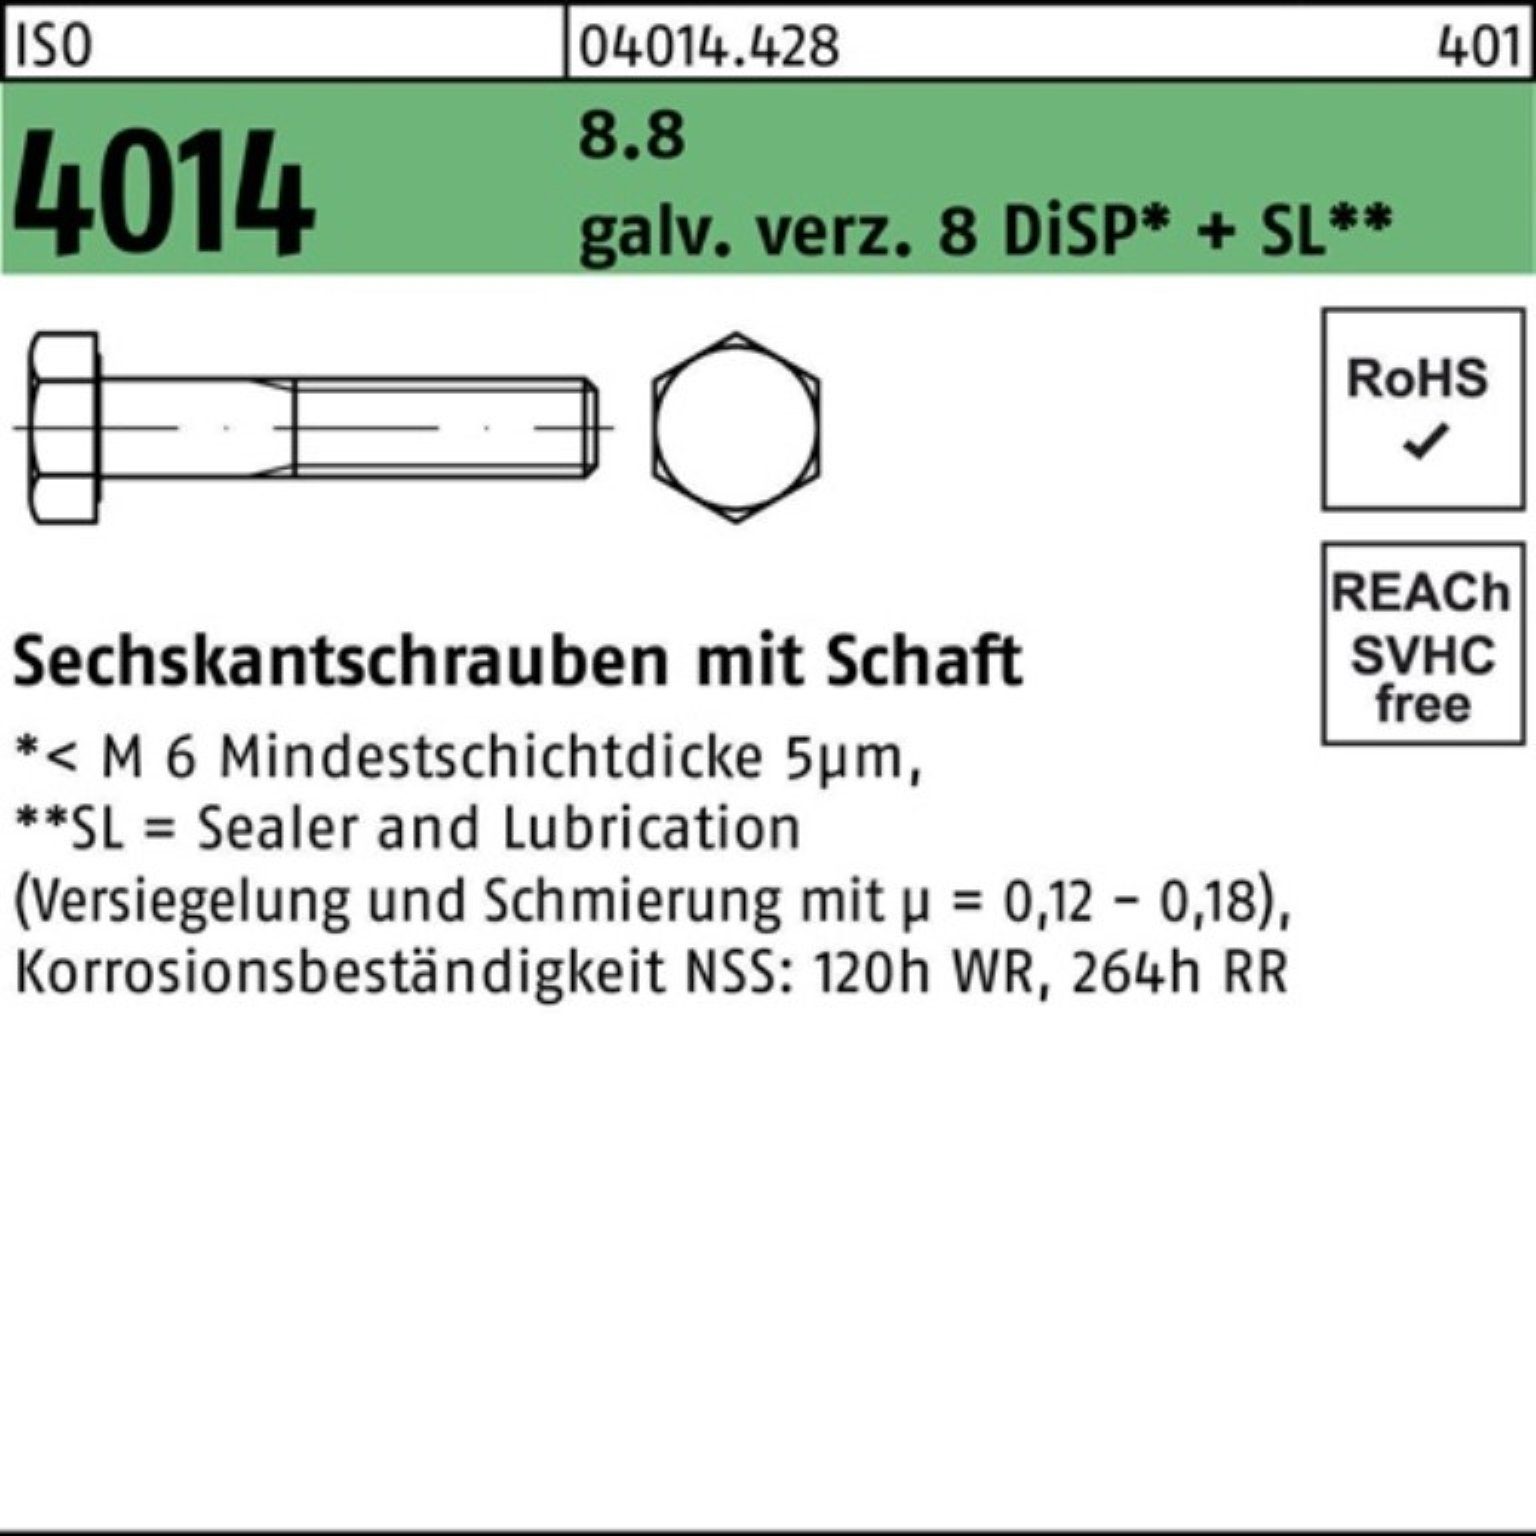 ISO Sechskantschraube galv.verz. 100er 4014 Sechskantschraube Schaft M16x300 8 Bufab 8.8 Pack